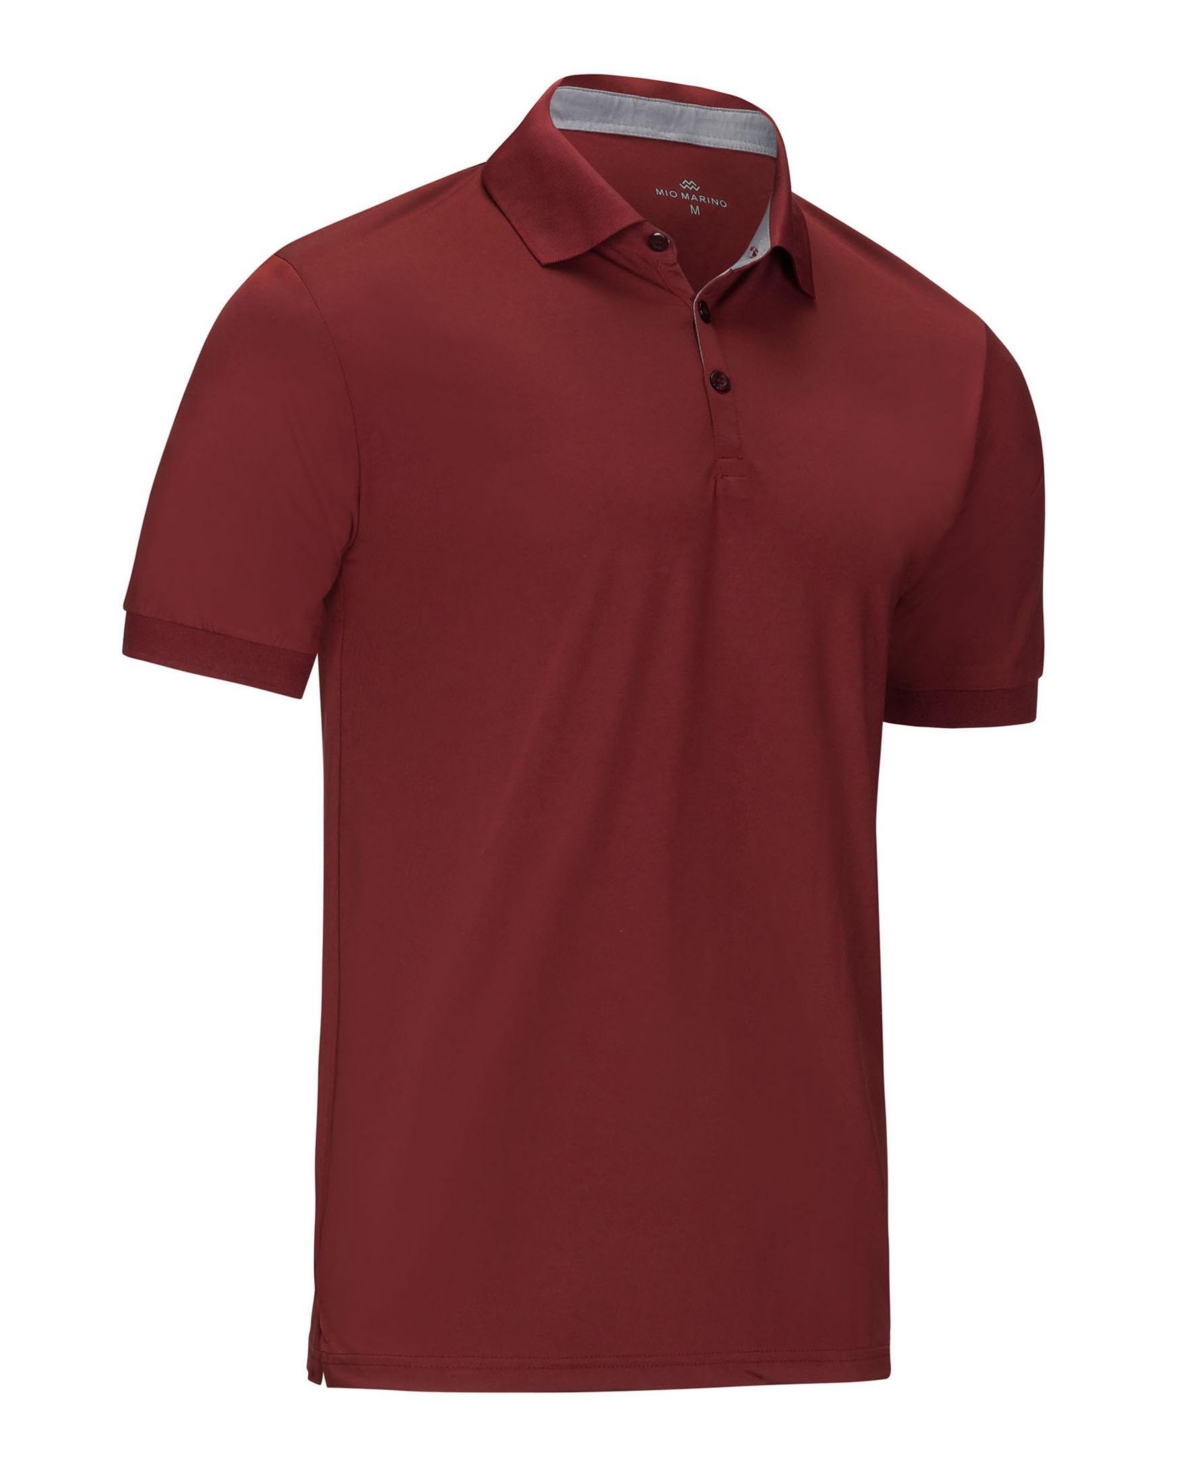 Men's Designer Golf Polo Shirt - Sky blue